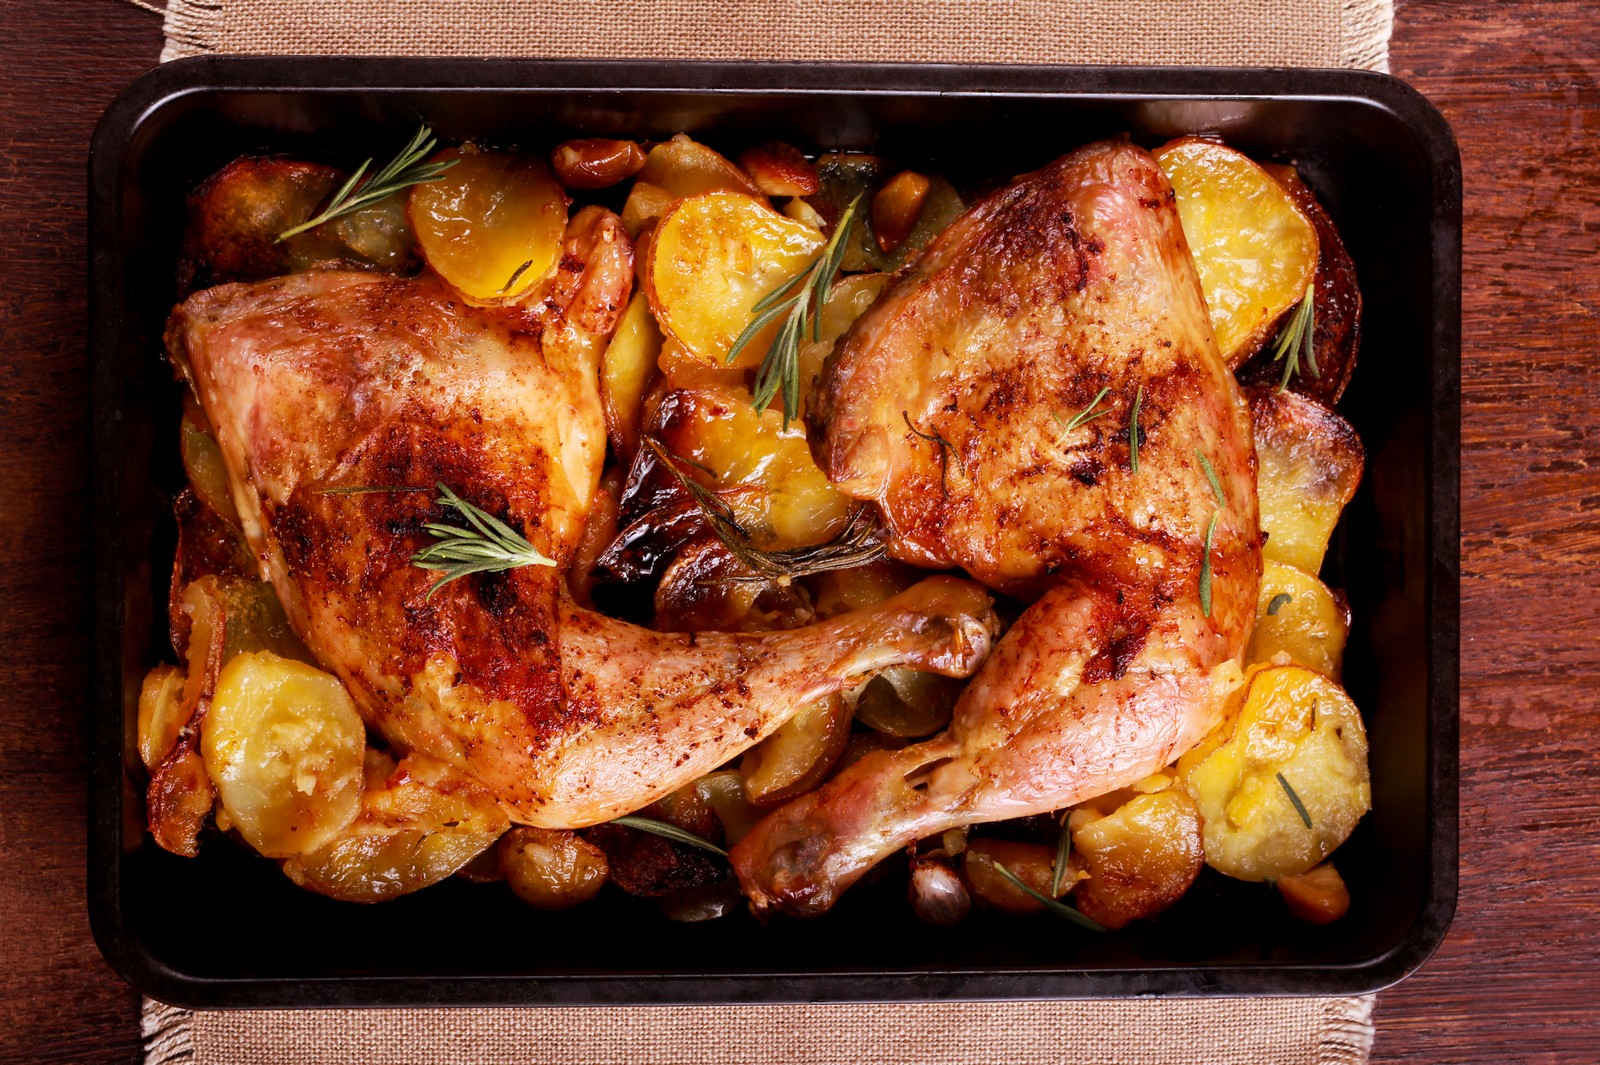 Μπουτάκια κοτόπουλου στο φούρνο με φρέσκα βότανα, λεμόνι και τραγανές, “πατημένες” πατατούλες